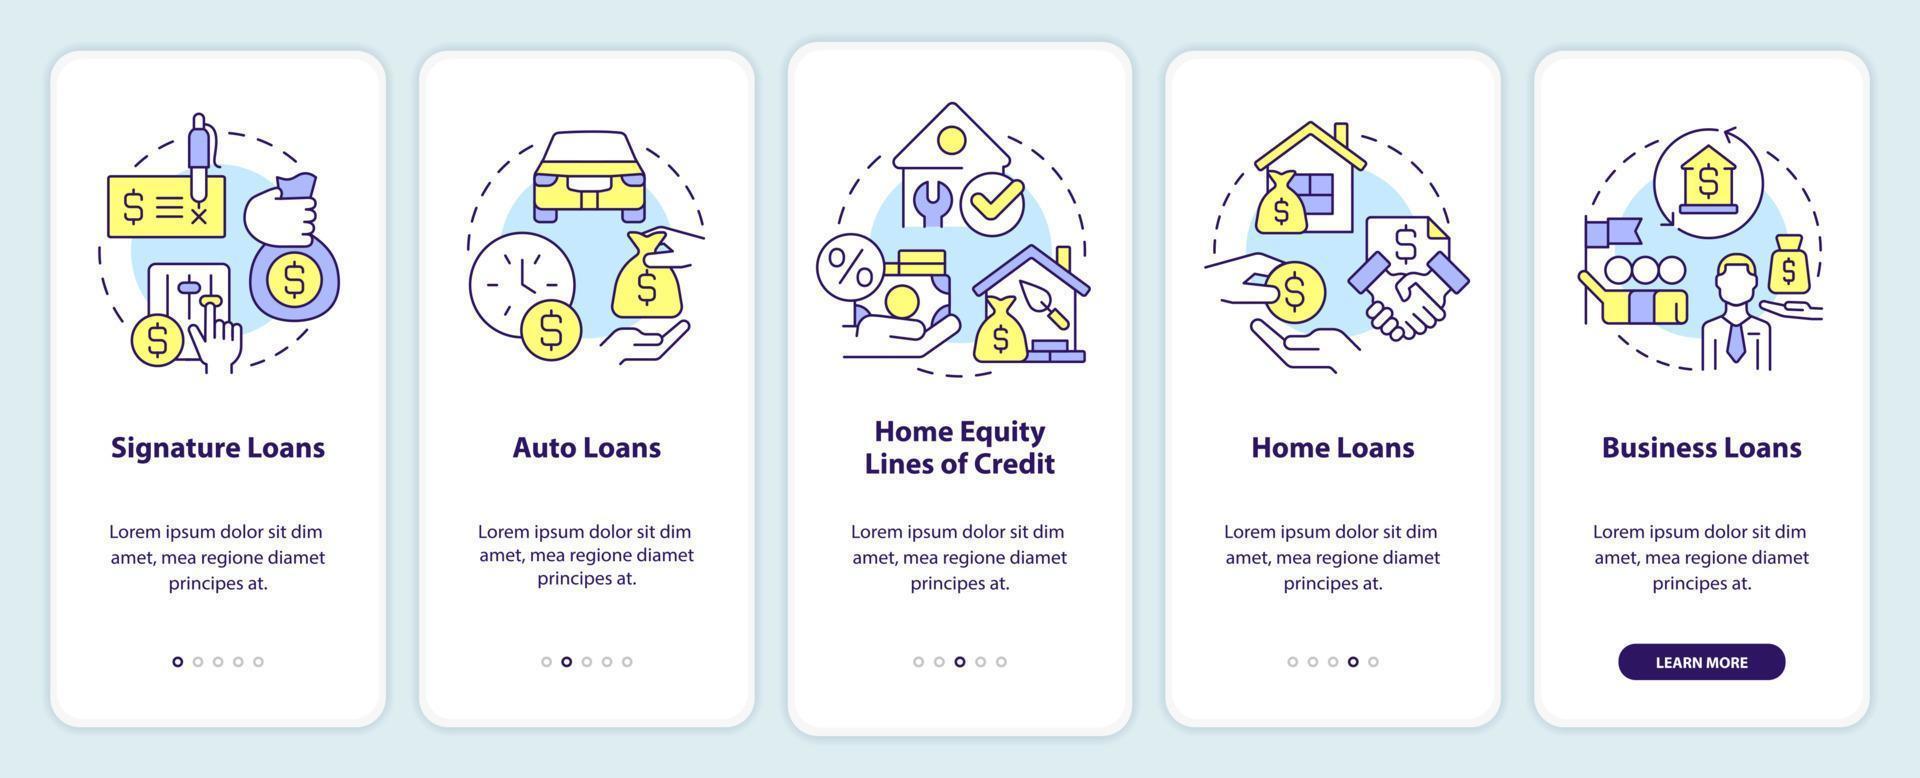 tipos de empréstimos na tela do aplicativo móvel. passo a passo de serviço bancário 5 passos instruções gráficas editáveis com conceitos lineares. ui, ux, modelo de gui. vetor